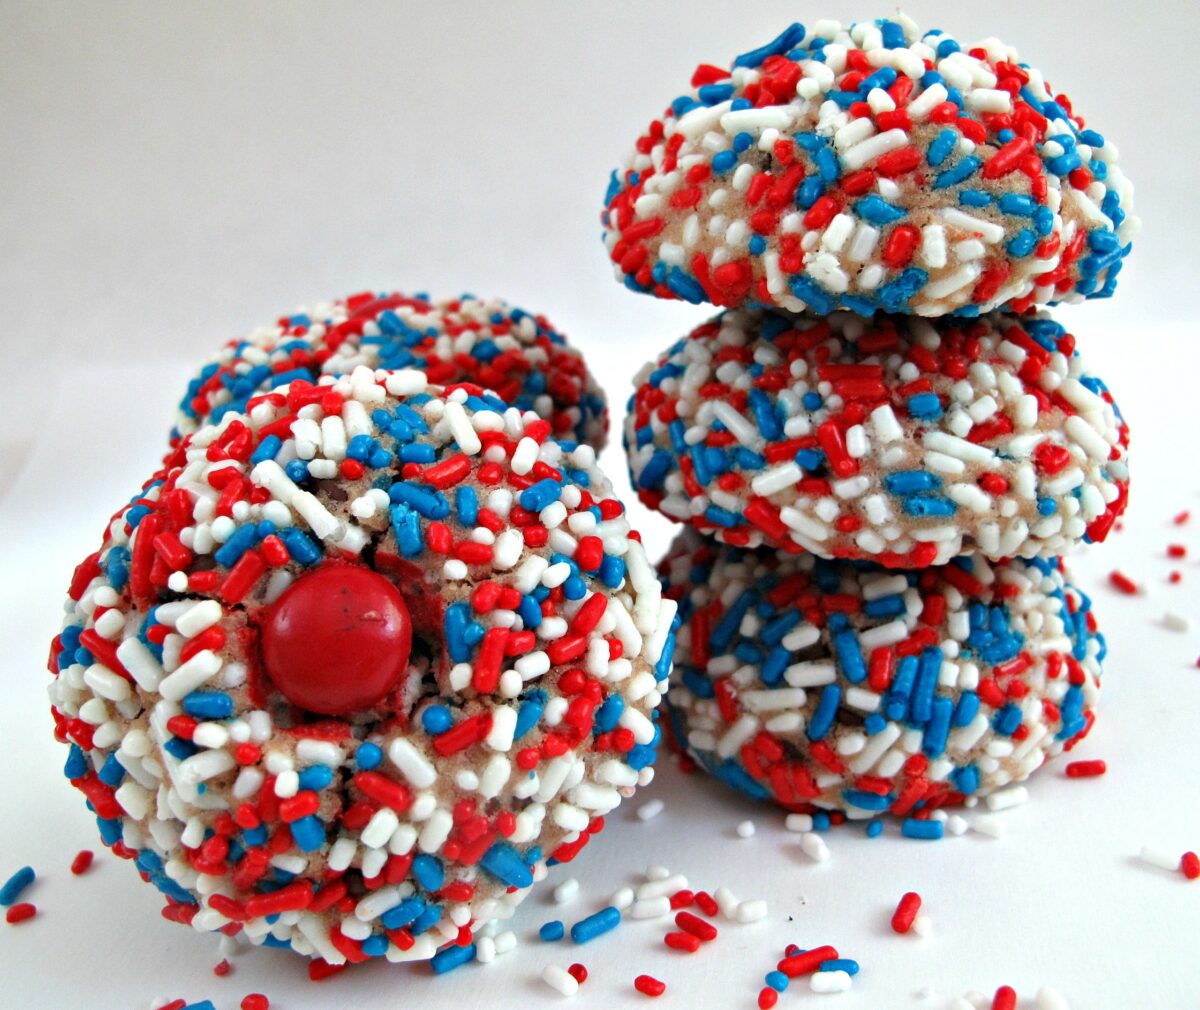 Cookies coated in red, white, blue patriotic jimmies sprinkles.